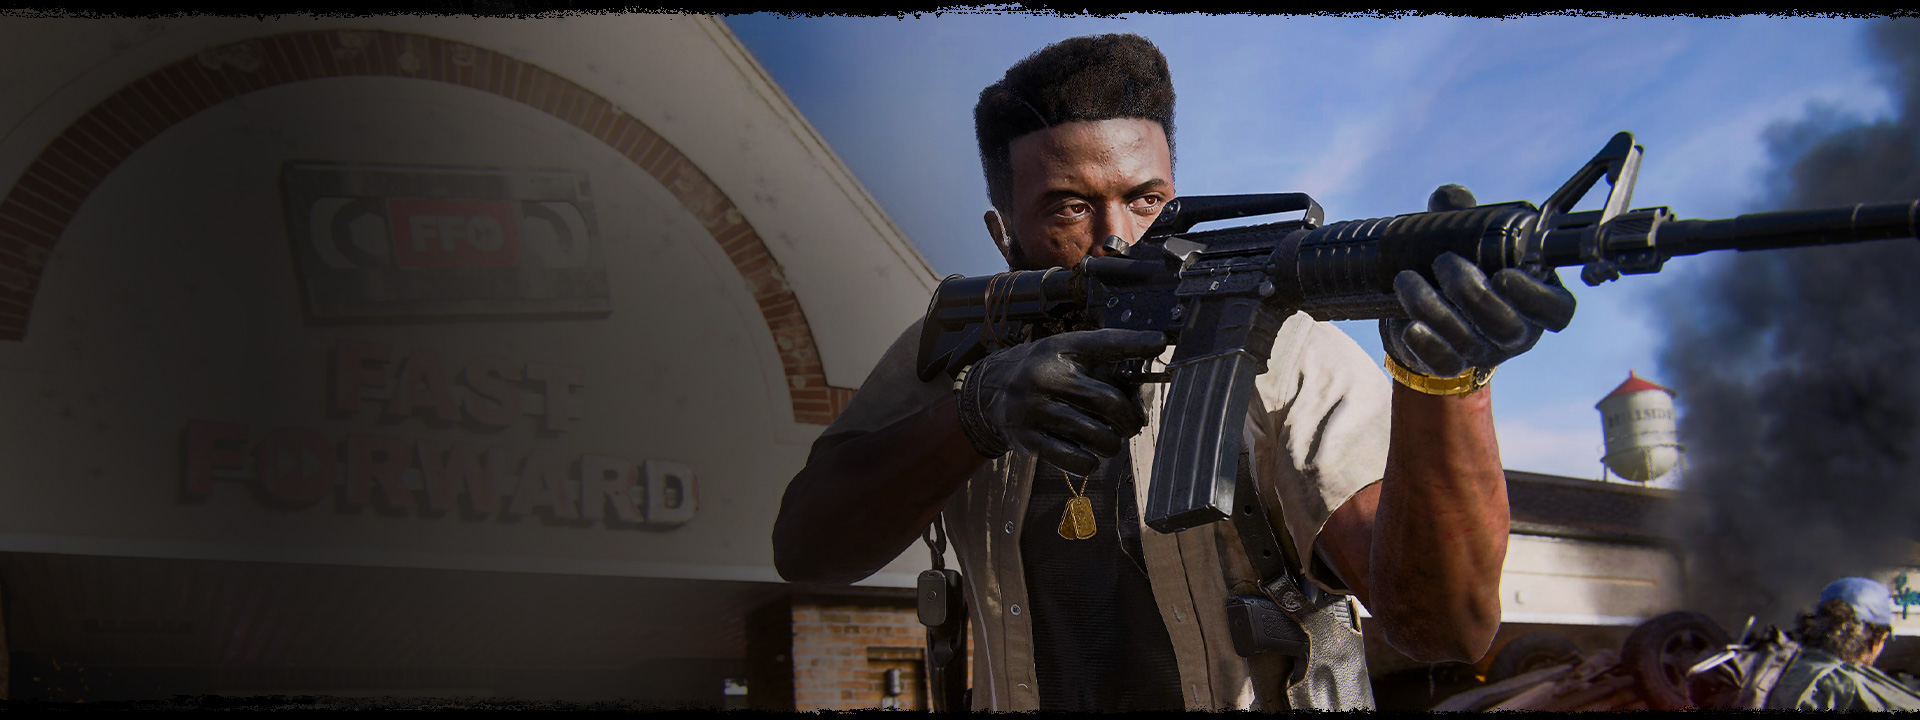 Un personnage pointe un gros pistolet au loin devant un magasin de location de vidéos.